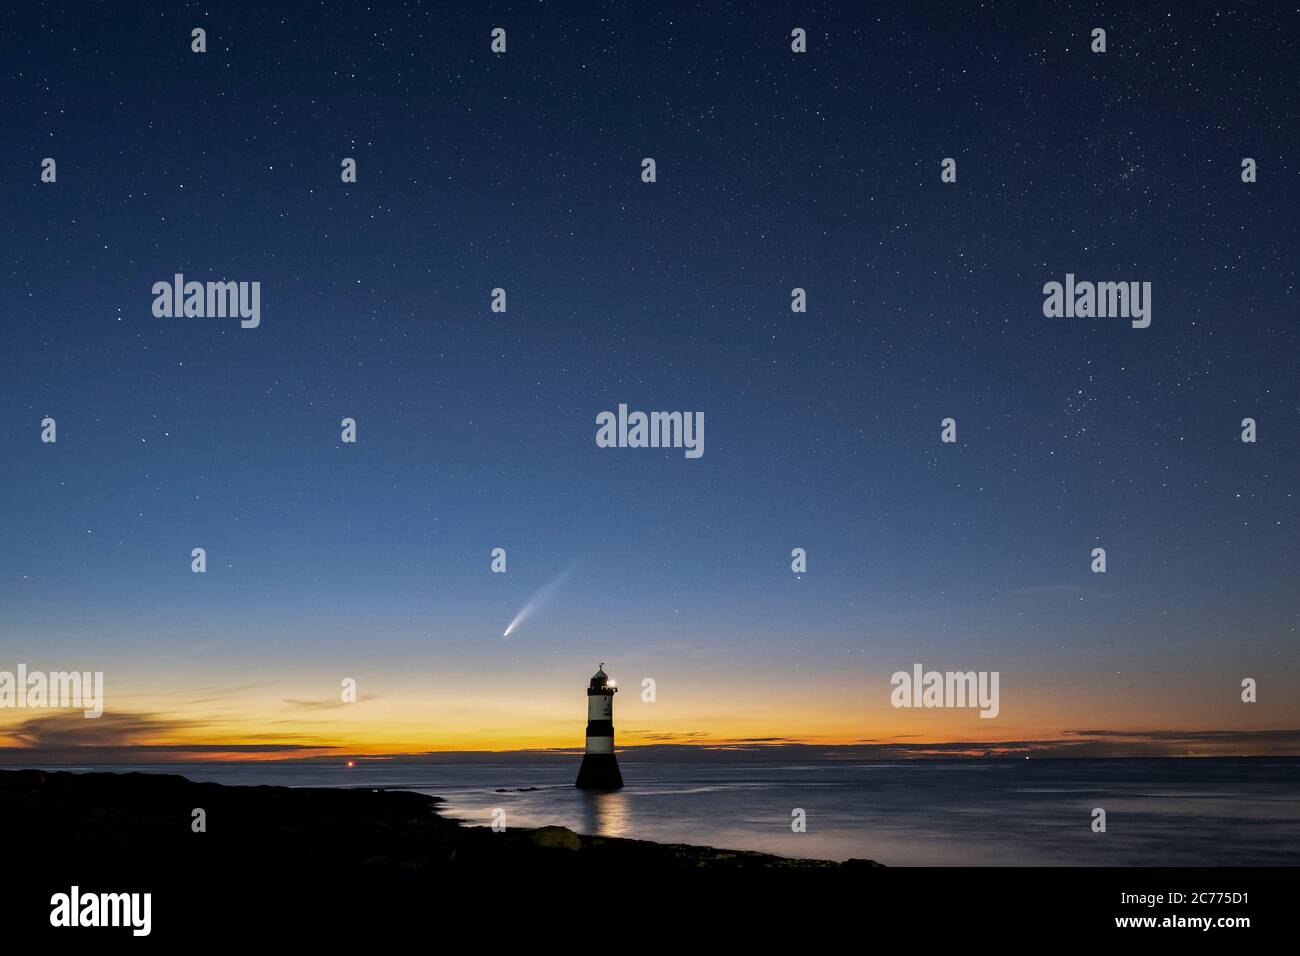 Comet NEOWISE et le ciel de nuit au-dessus de Trwyn du Lighthouse ou Penmon point Lighthouse, Penmon, Anglesey, Nord du pays de Galles, Royaume-Uni Banque D'Images